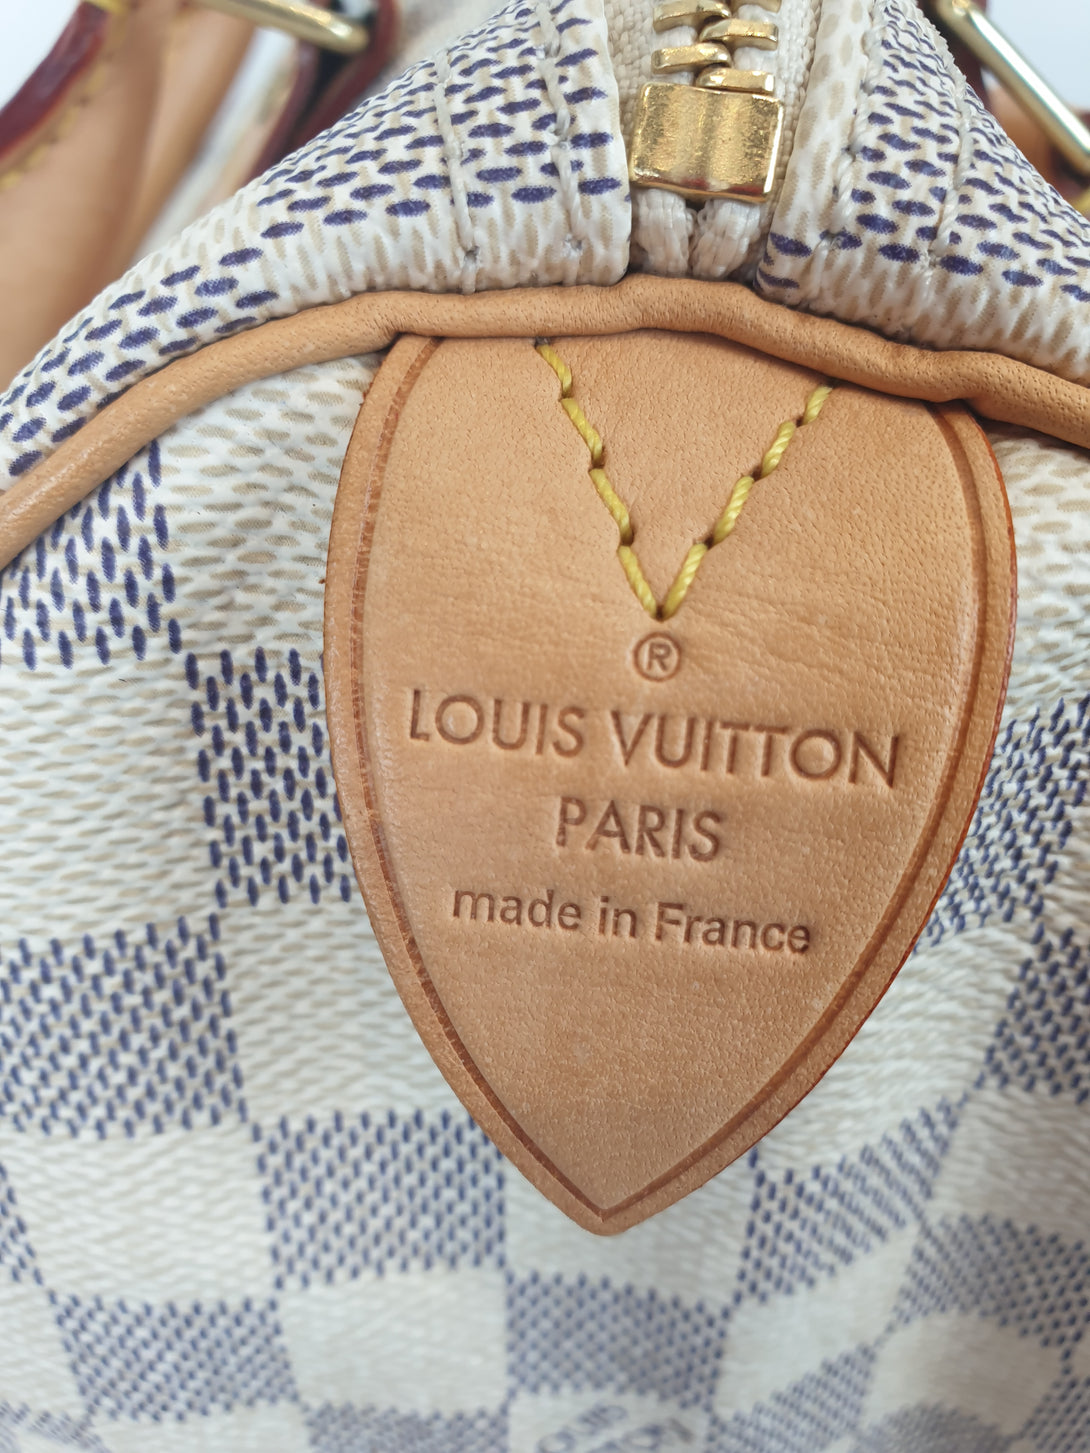 Louis Vuitton Damier Azur Speedy 25 - As Seen on Instagram - Siopaella Designer Exchange